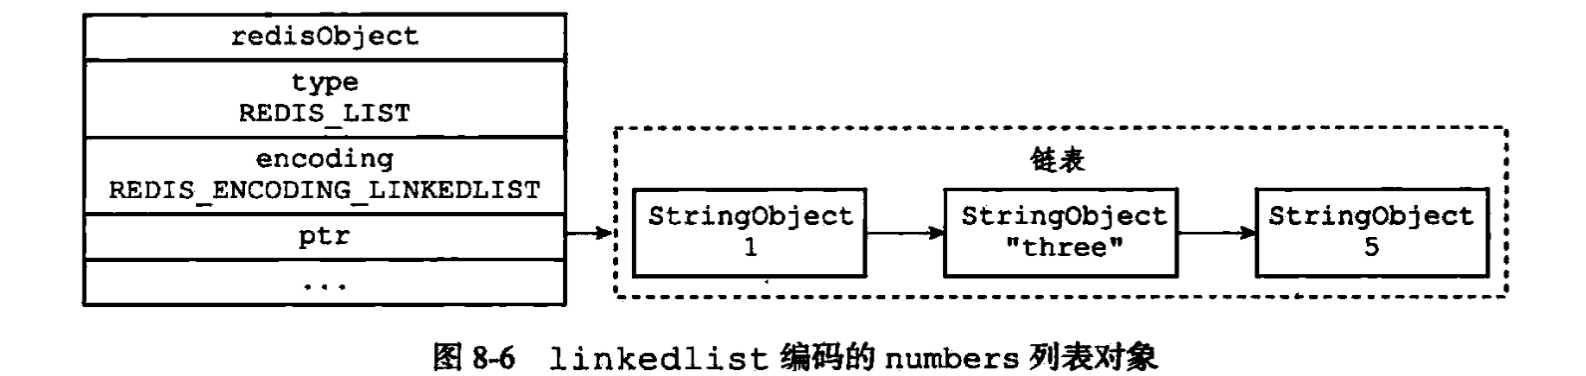 linkedlist编码的list